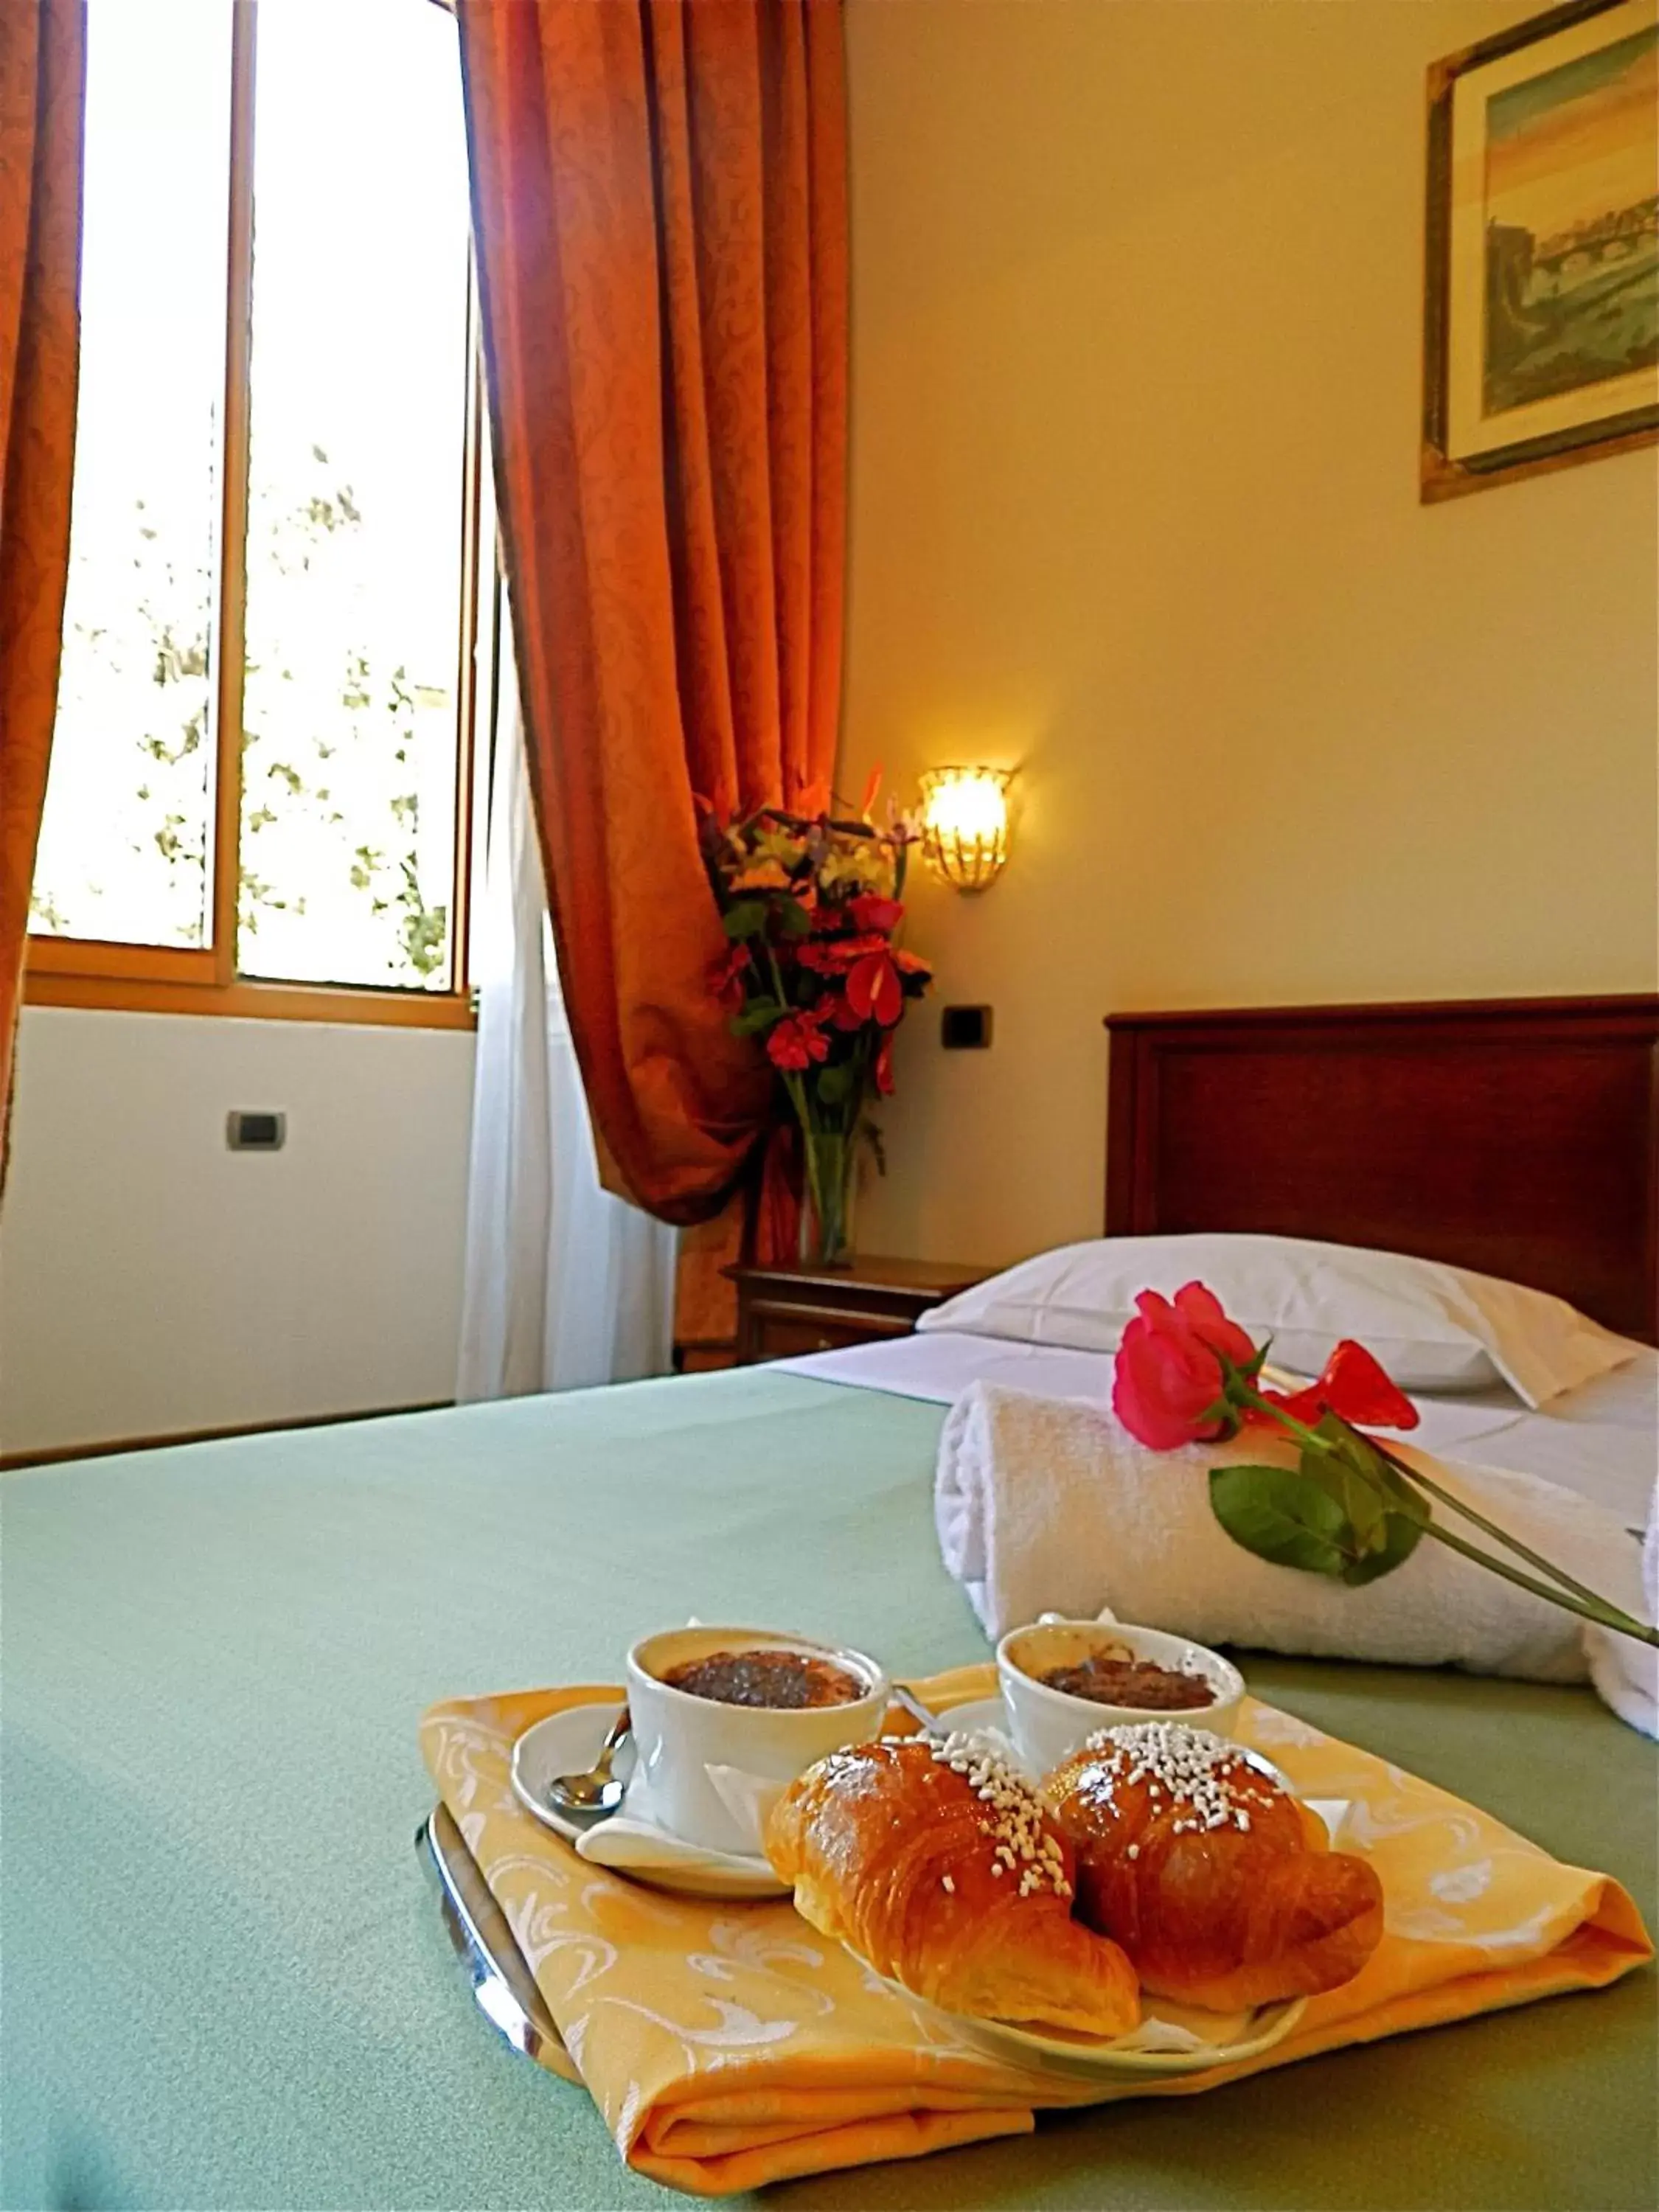 Italian breakfast in Domus Florentiae Hotel